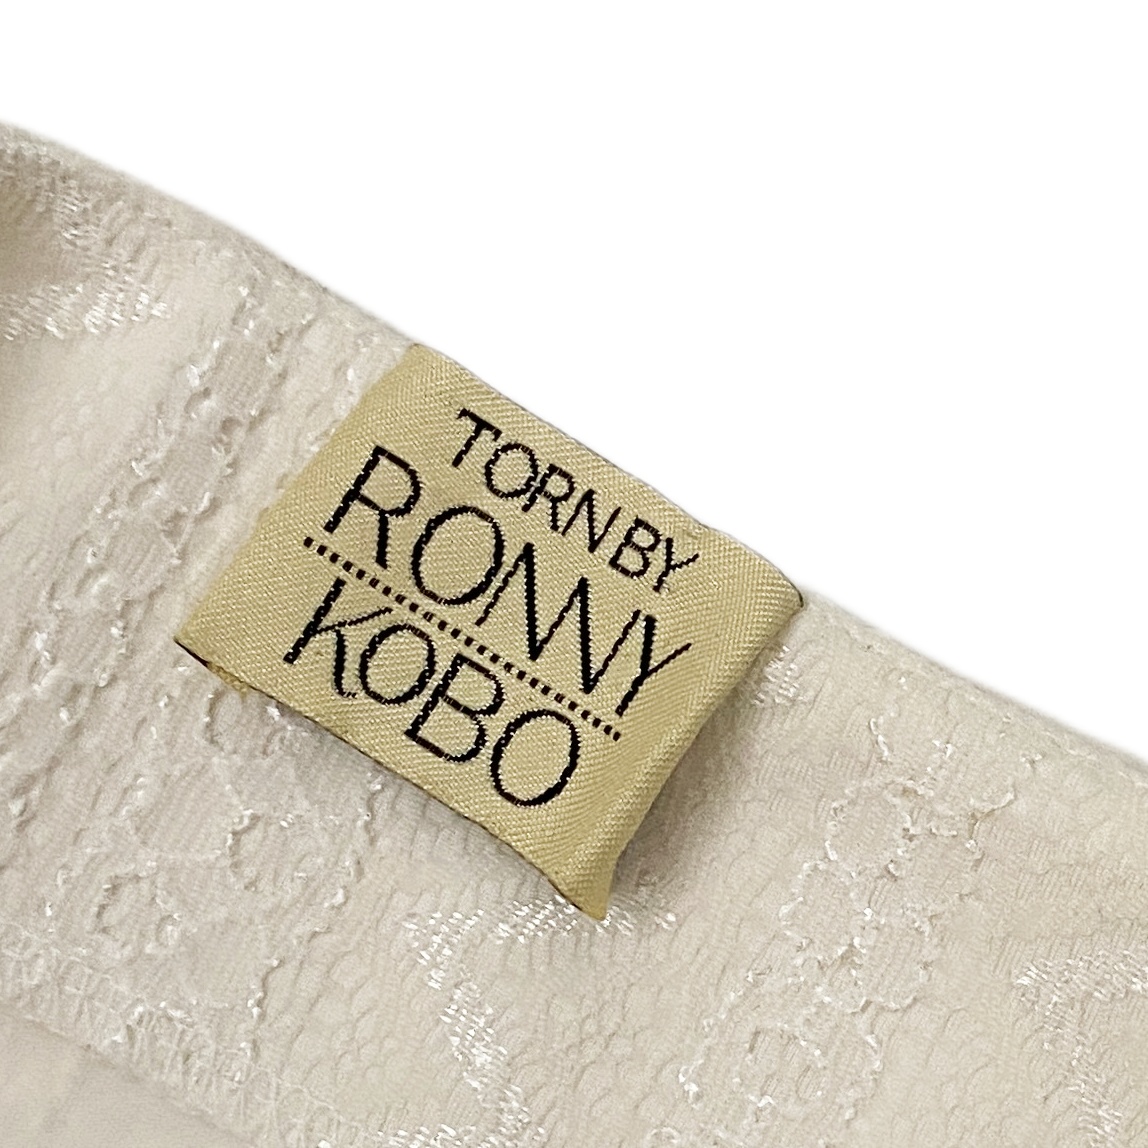 Ronny Kobo White Lace Maxi Skirt (S)